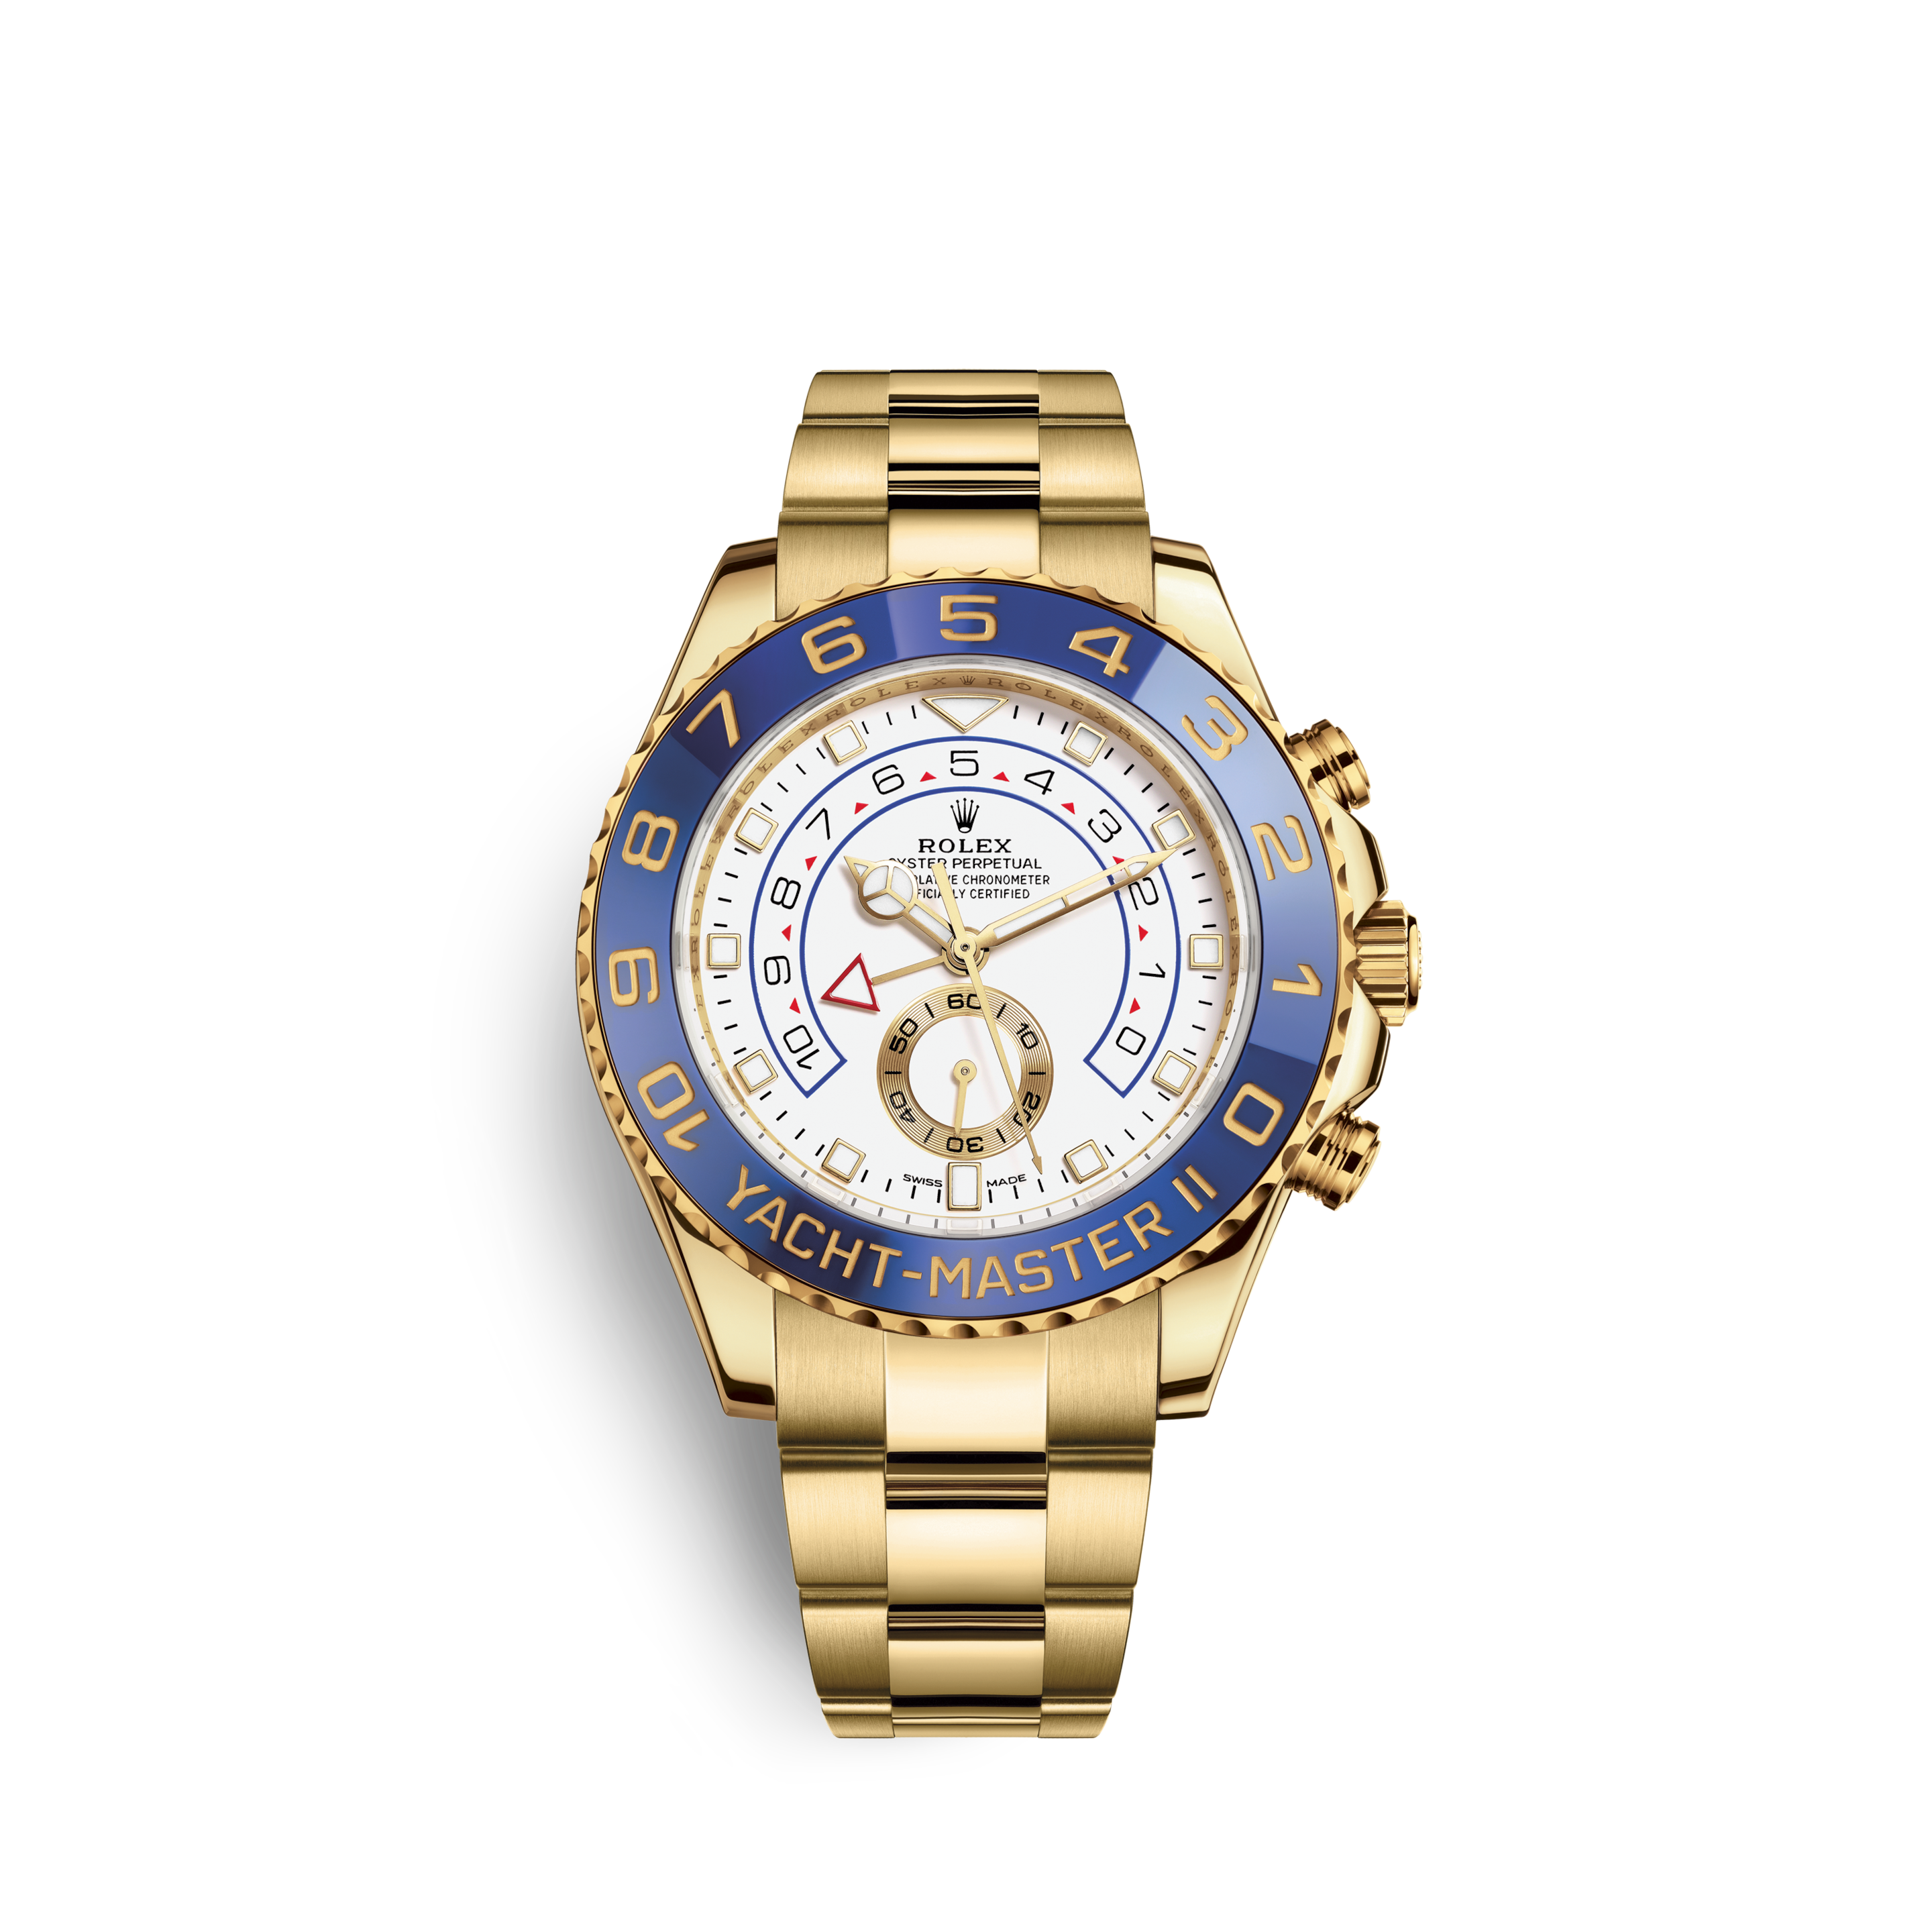 Rolex Yacht-Master - 揚帆遠航的腕錶